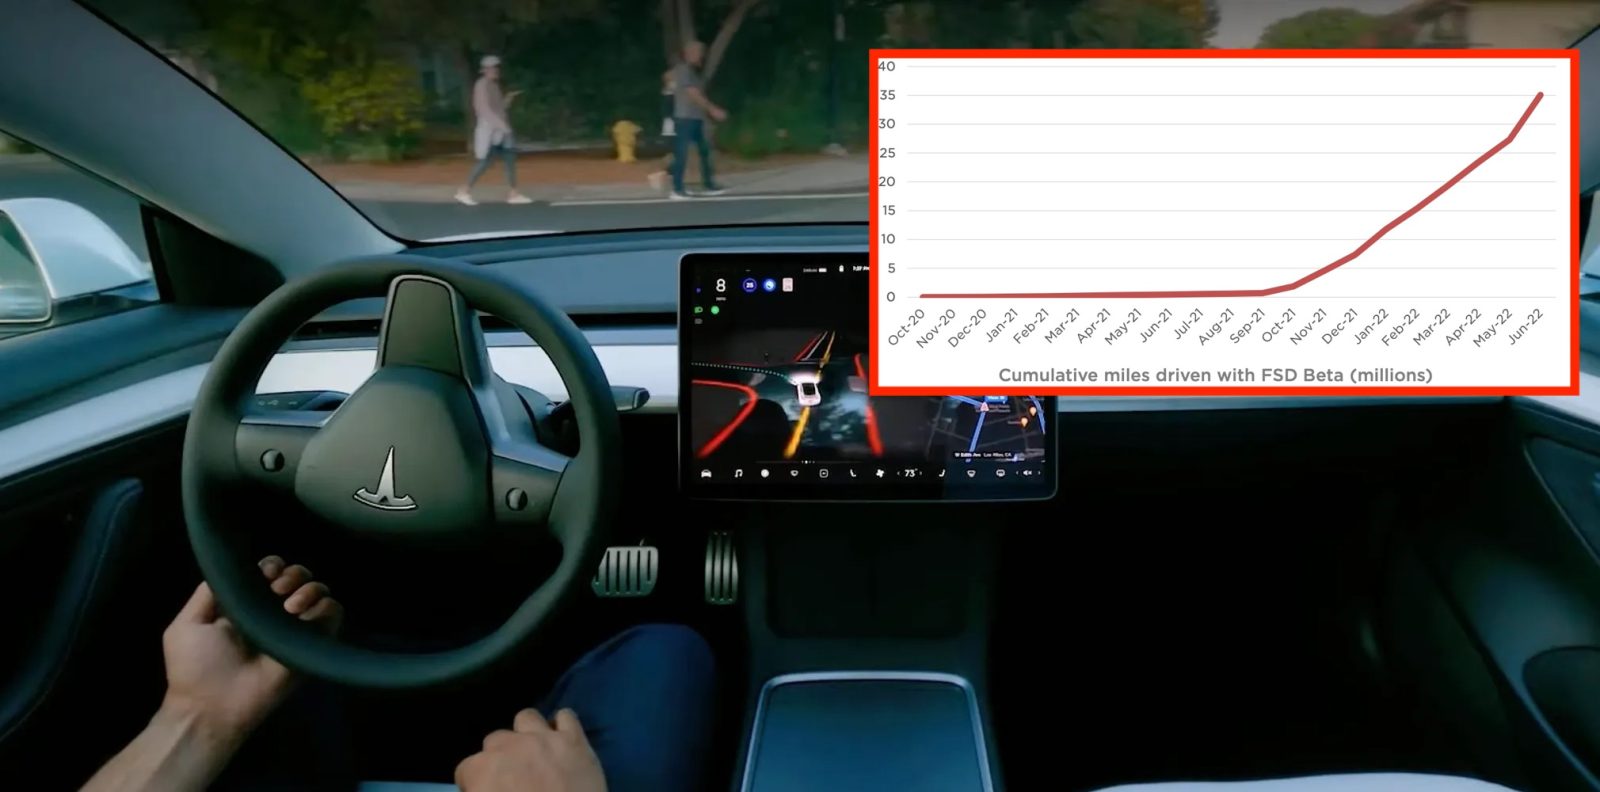 Tesla FSD Beta miles driven